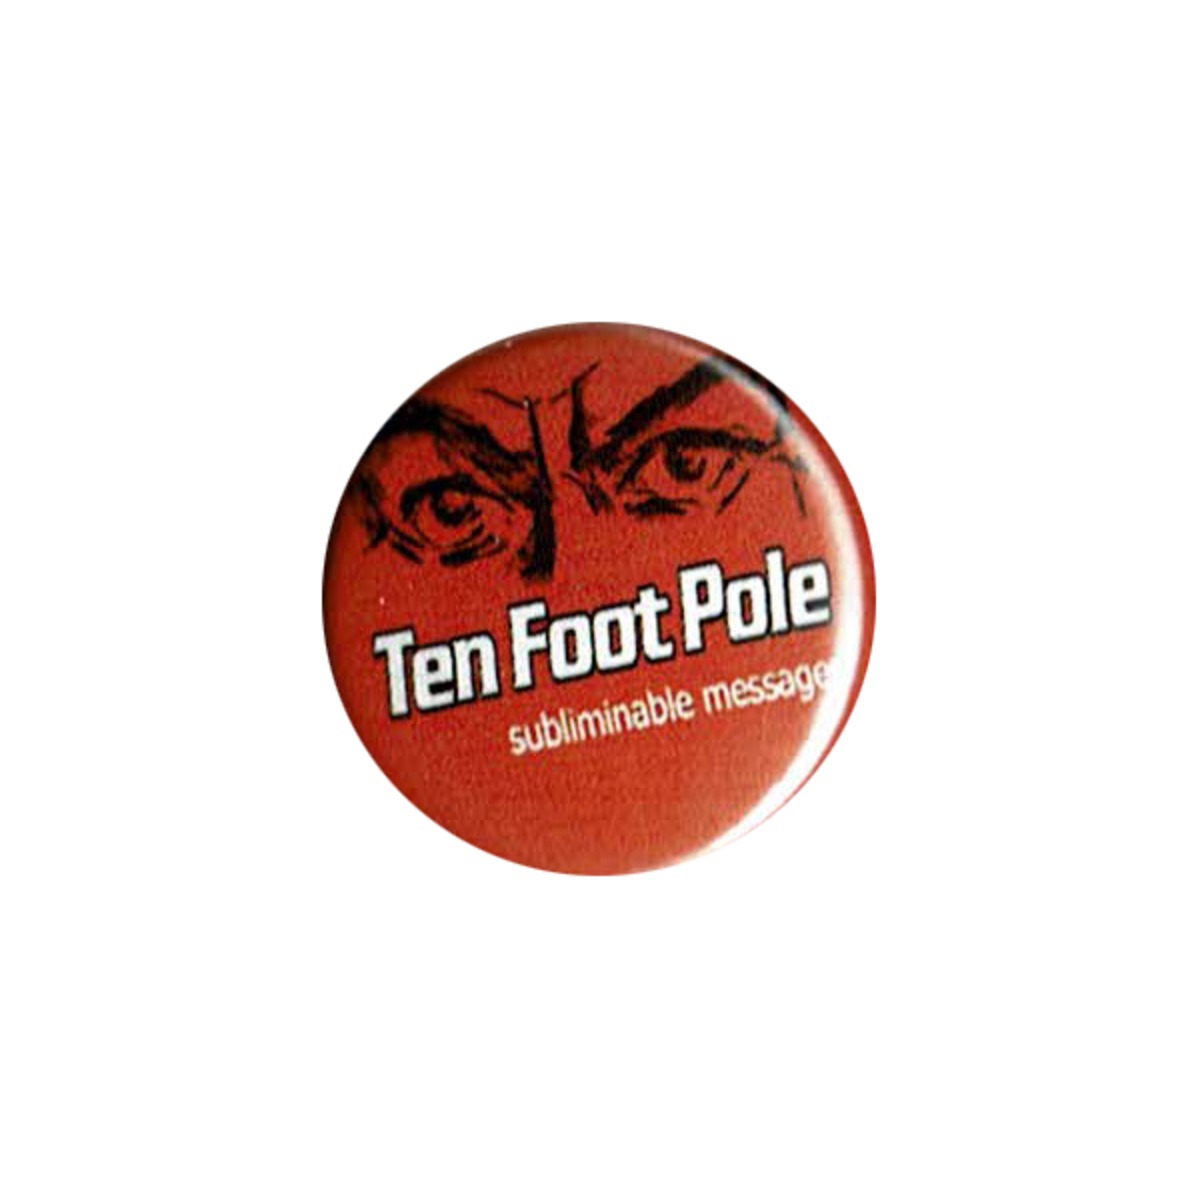 Ten Foot Pole（テンフットポール）- Subliminal Messages ピンバッジ | 海外オフィシャルバンドマーチャンダイズストア  MERCH AGE